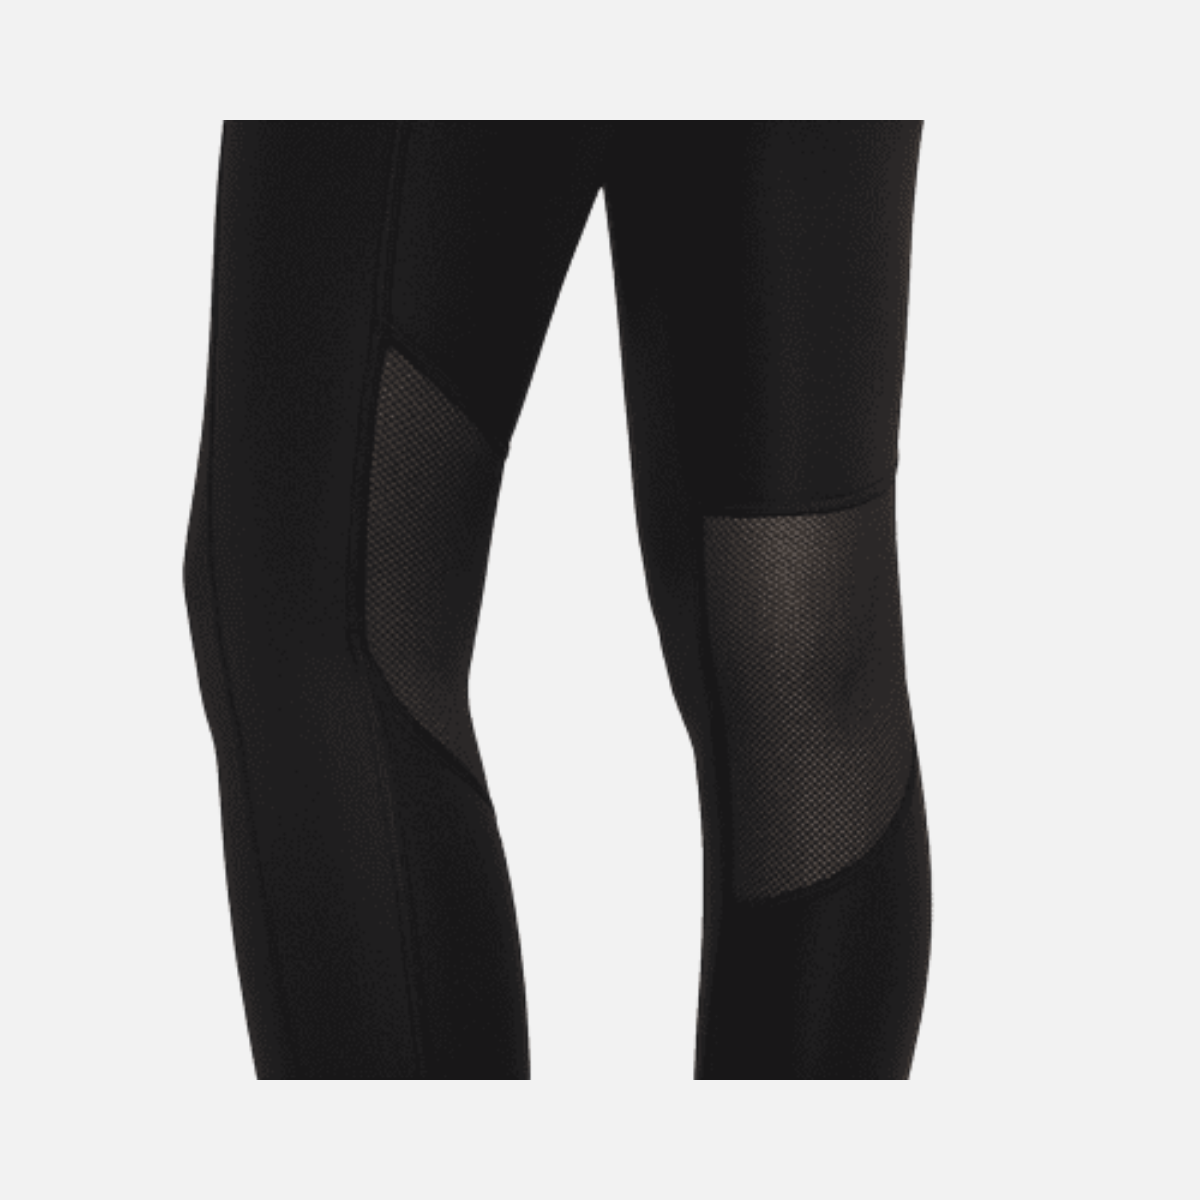 Nike, Epic Fast Pocket Running Leggings - Black